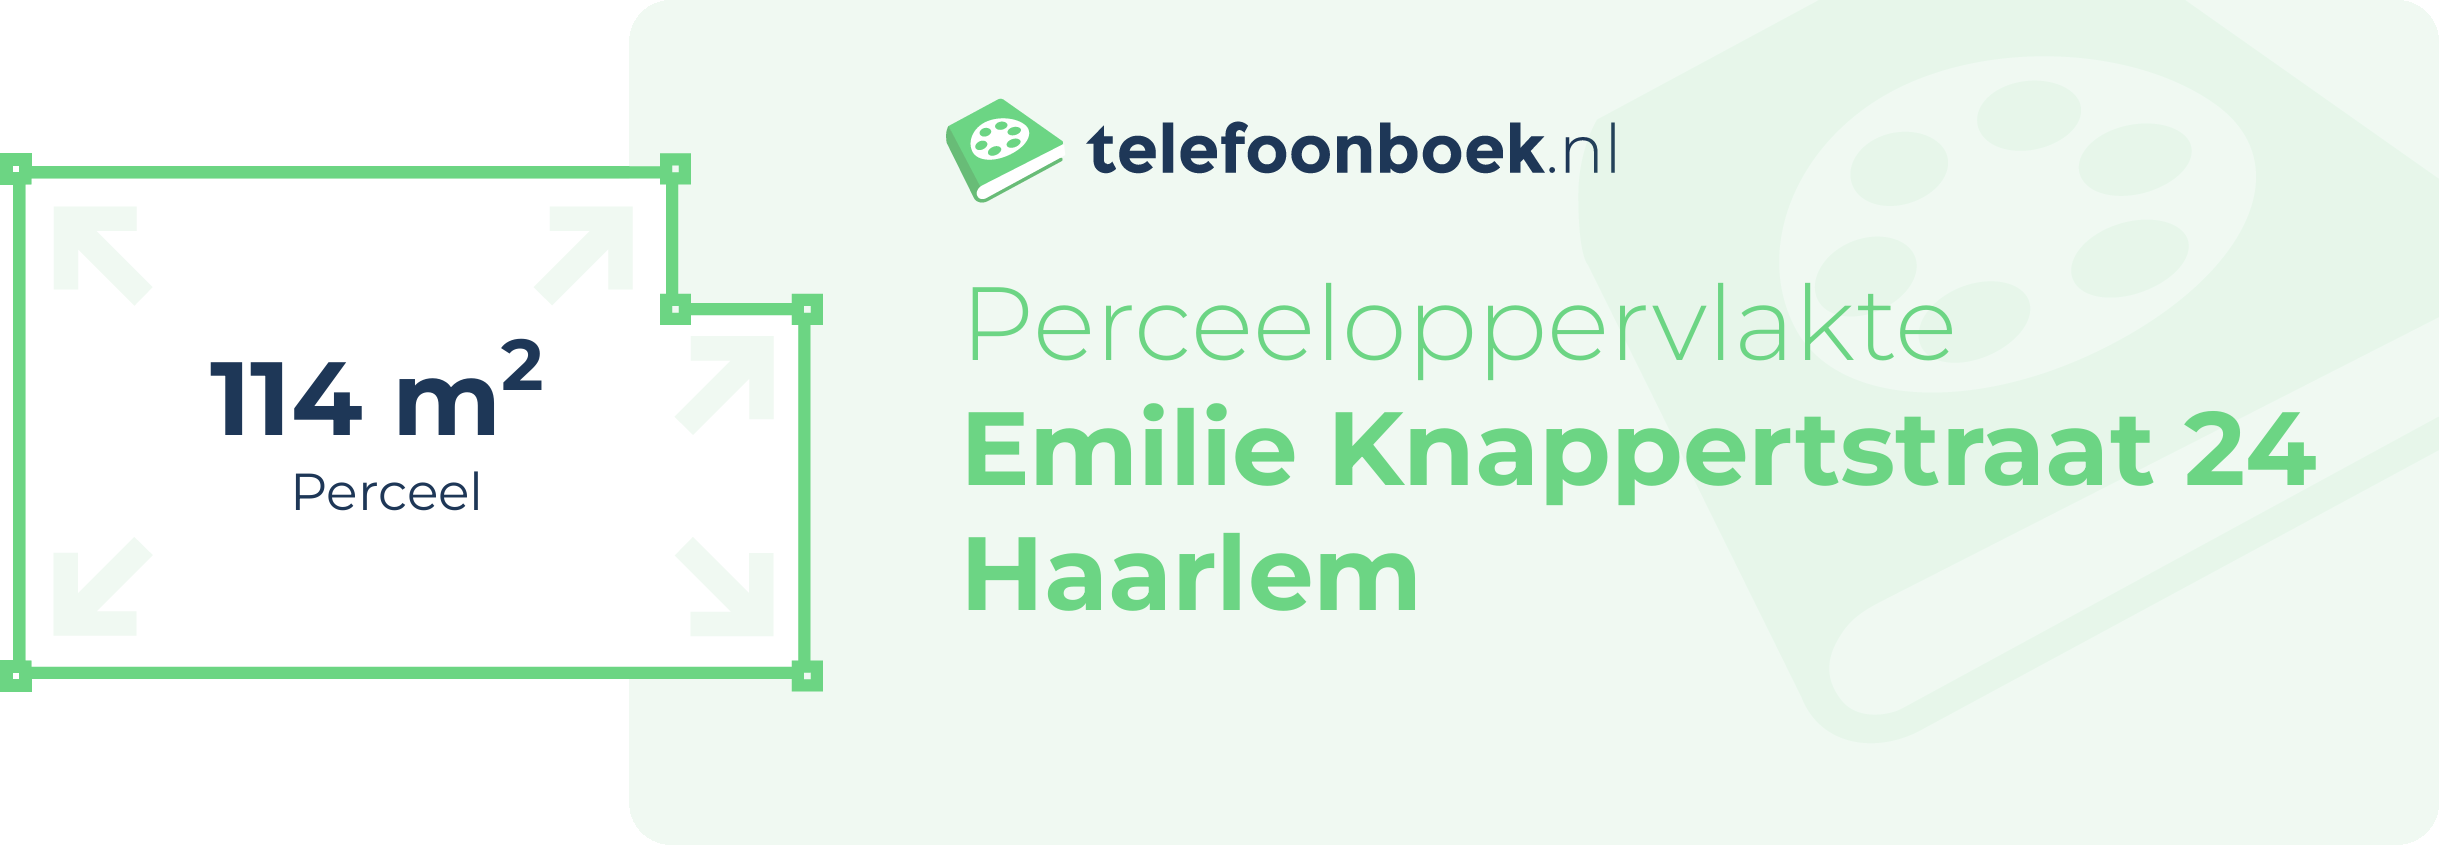 Perceeloppervlakte Emilie Knappertstraat 24 Haarlem